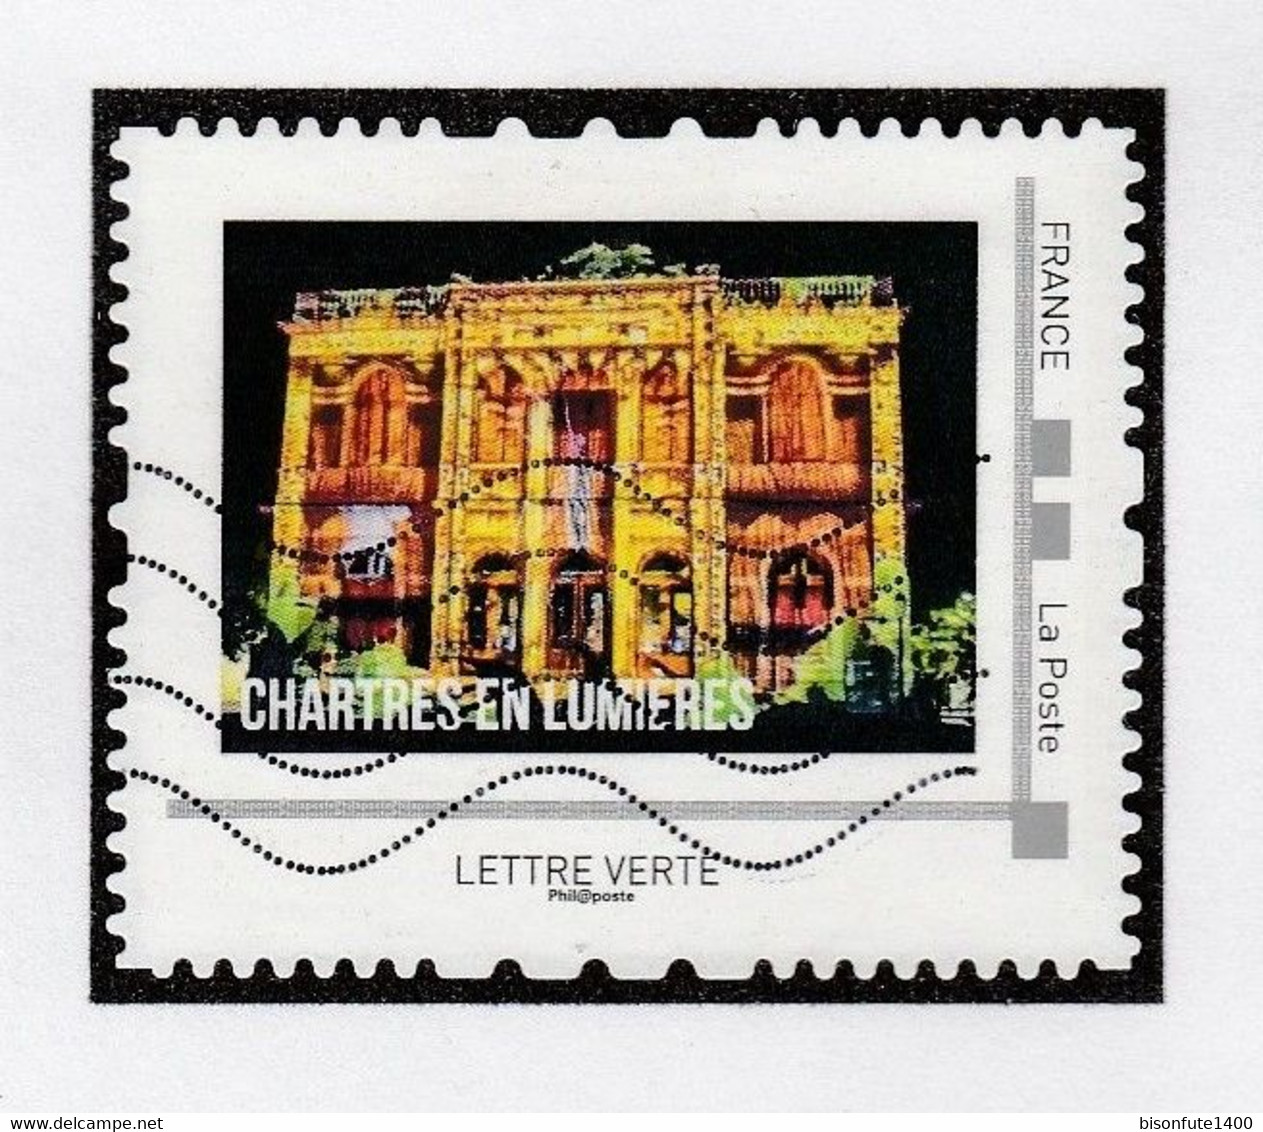 Série Complète Collector 2016 : Chartres En Lumière, Vendue Avec Sa Feuille De Présent. (*) ( Voir Photos ). - Collectors